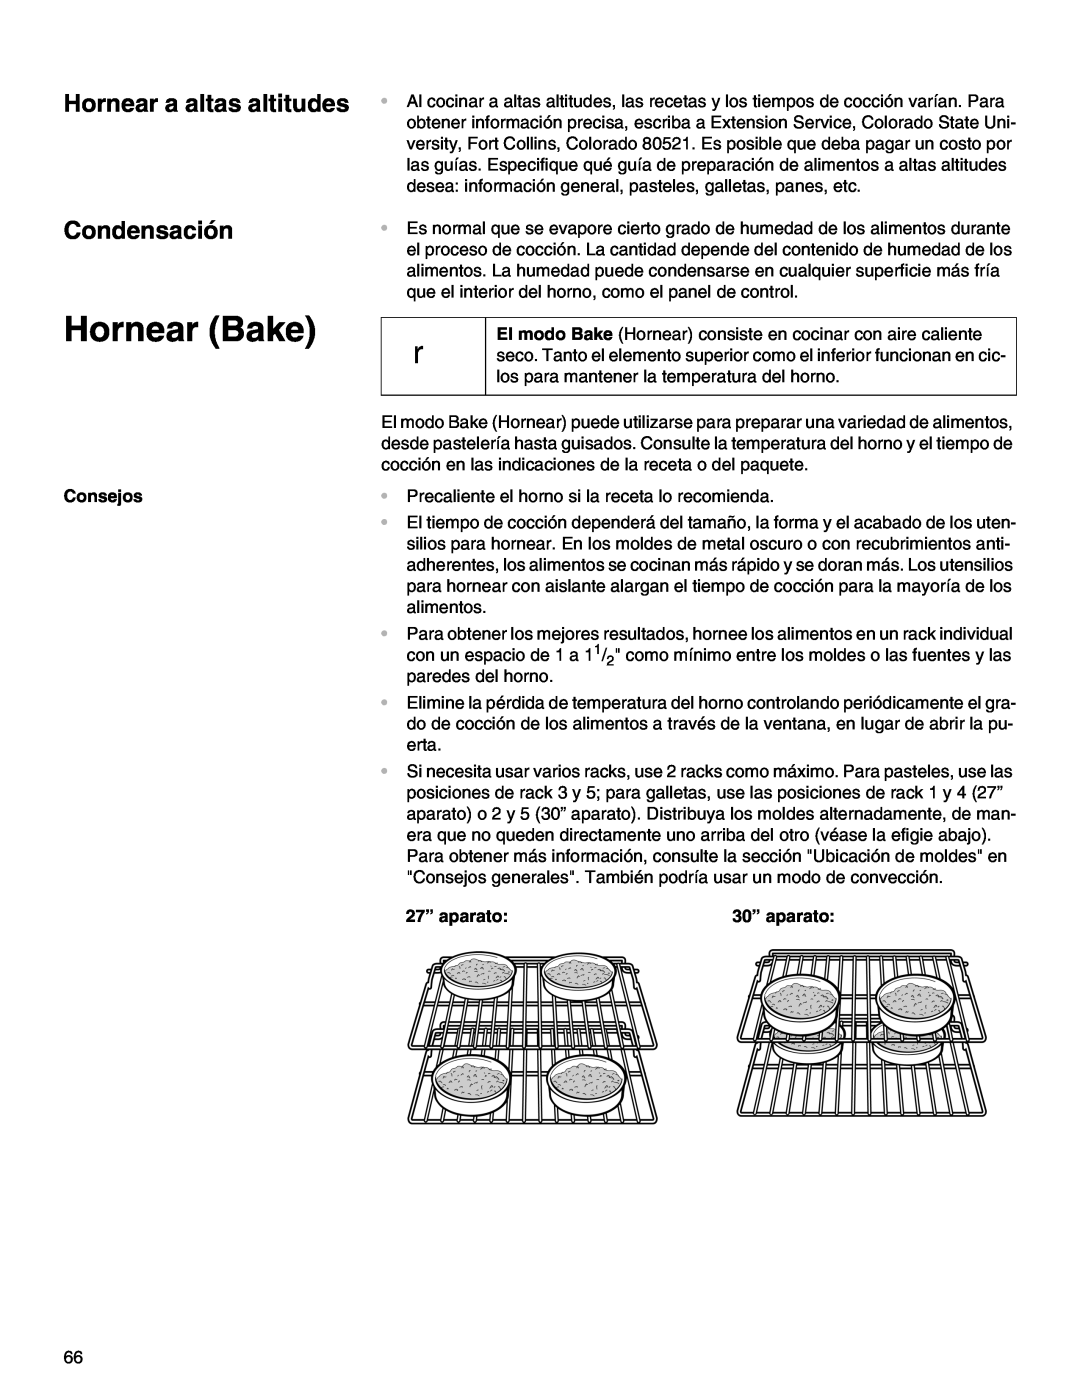 Thermador M271E, M301E manual Hornear Bake, Hornear a altas altitudes Condensación, Consejos, 27” aparato, 30” aparato 